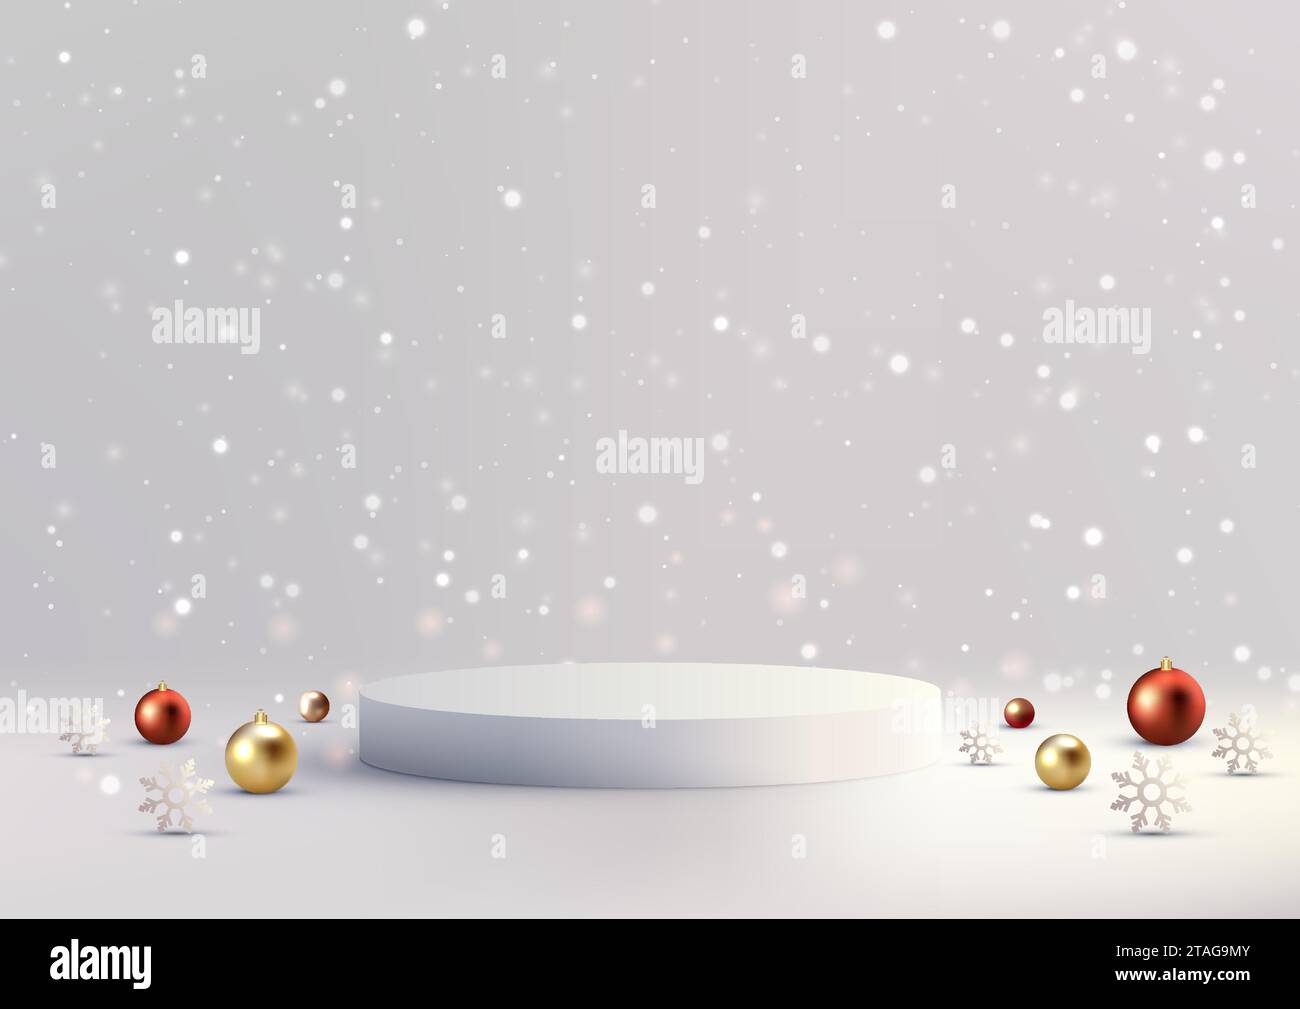 Weihnachtliche festliche 3D realistische weiße Farbe Podium Dekoration mit Gold und Rot viele Kugeln auf weißem Wandhintergrund mit Schneefall. Weihnachtsfeiertag c Stock Vektor